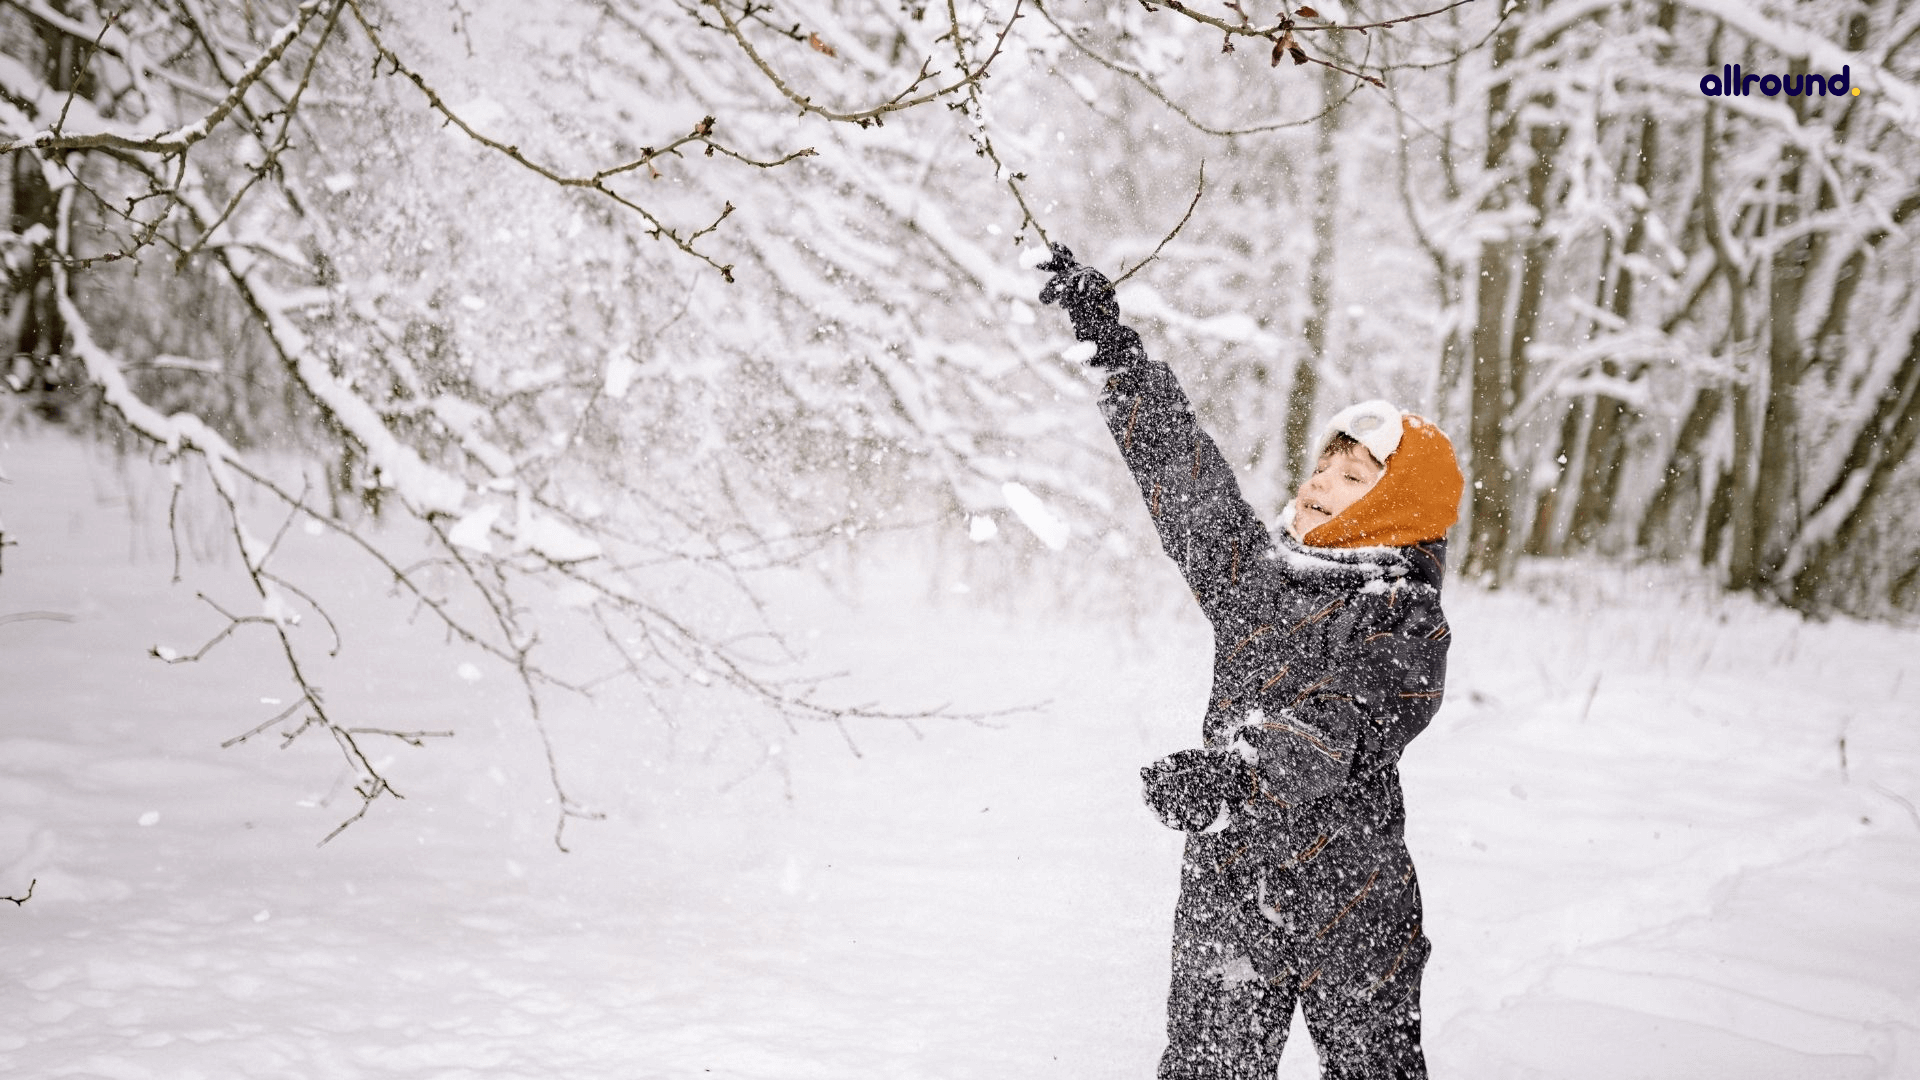 10 of the Best Fun Winter Field Trips